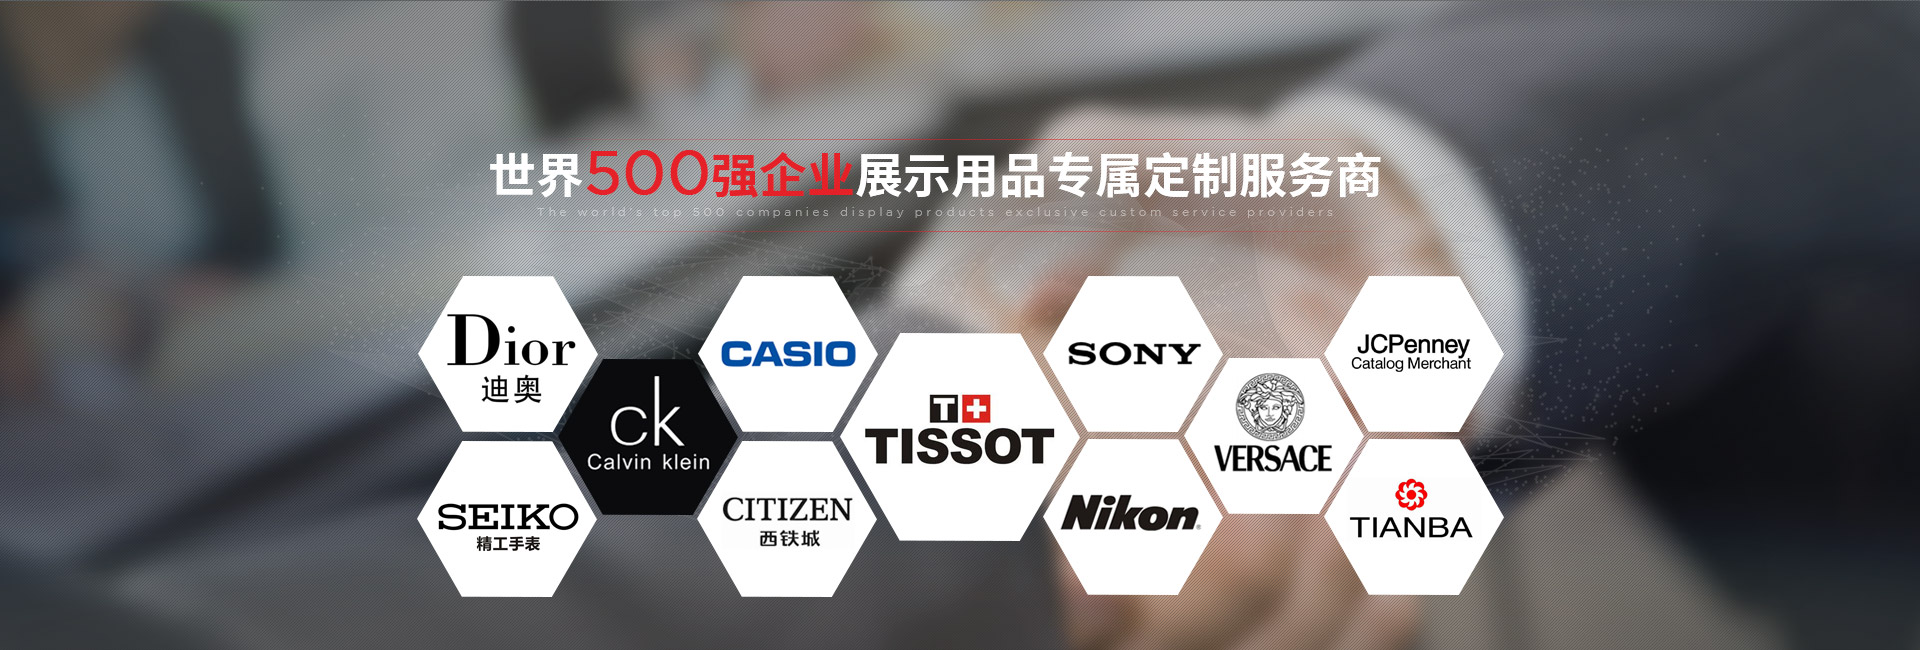 j9九游会真人游戏第一-世界500强企业展示用品专属定制服务商